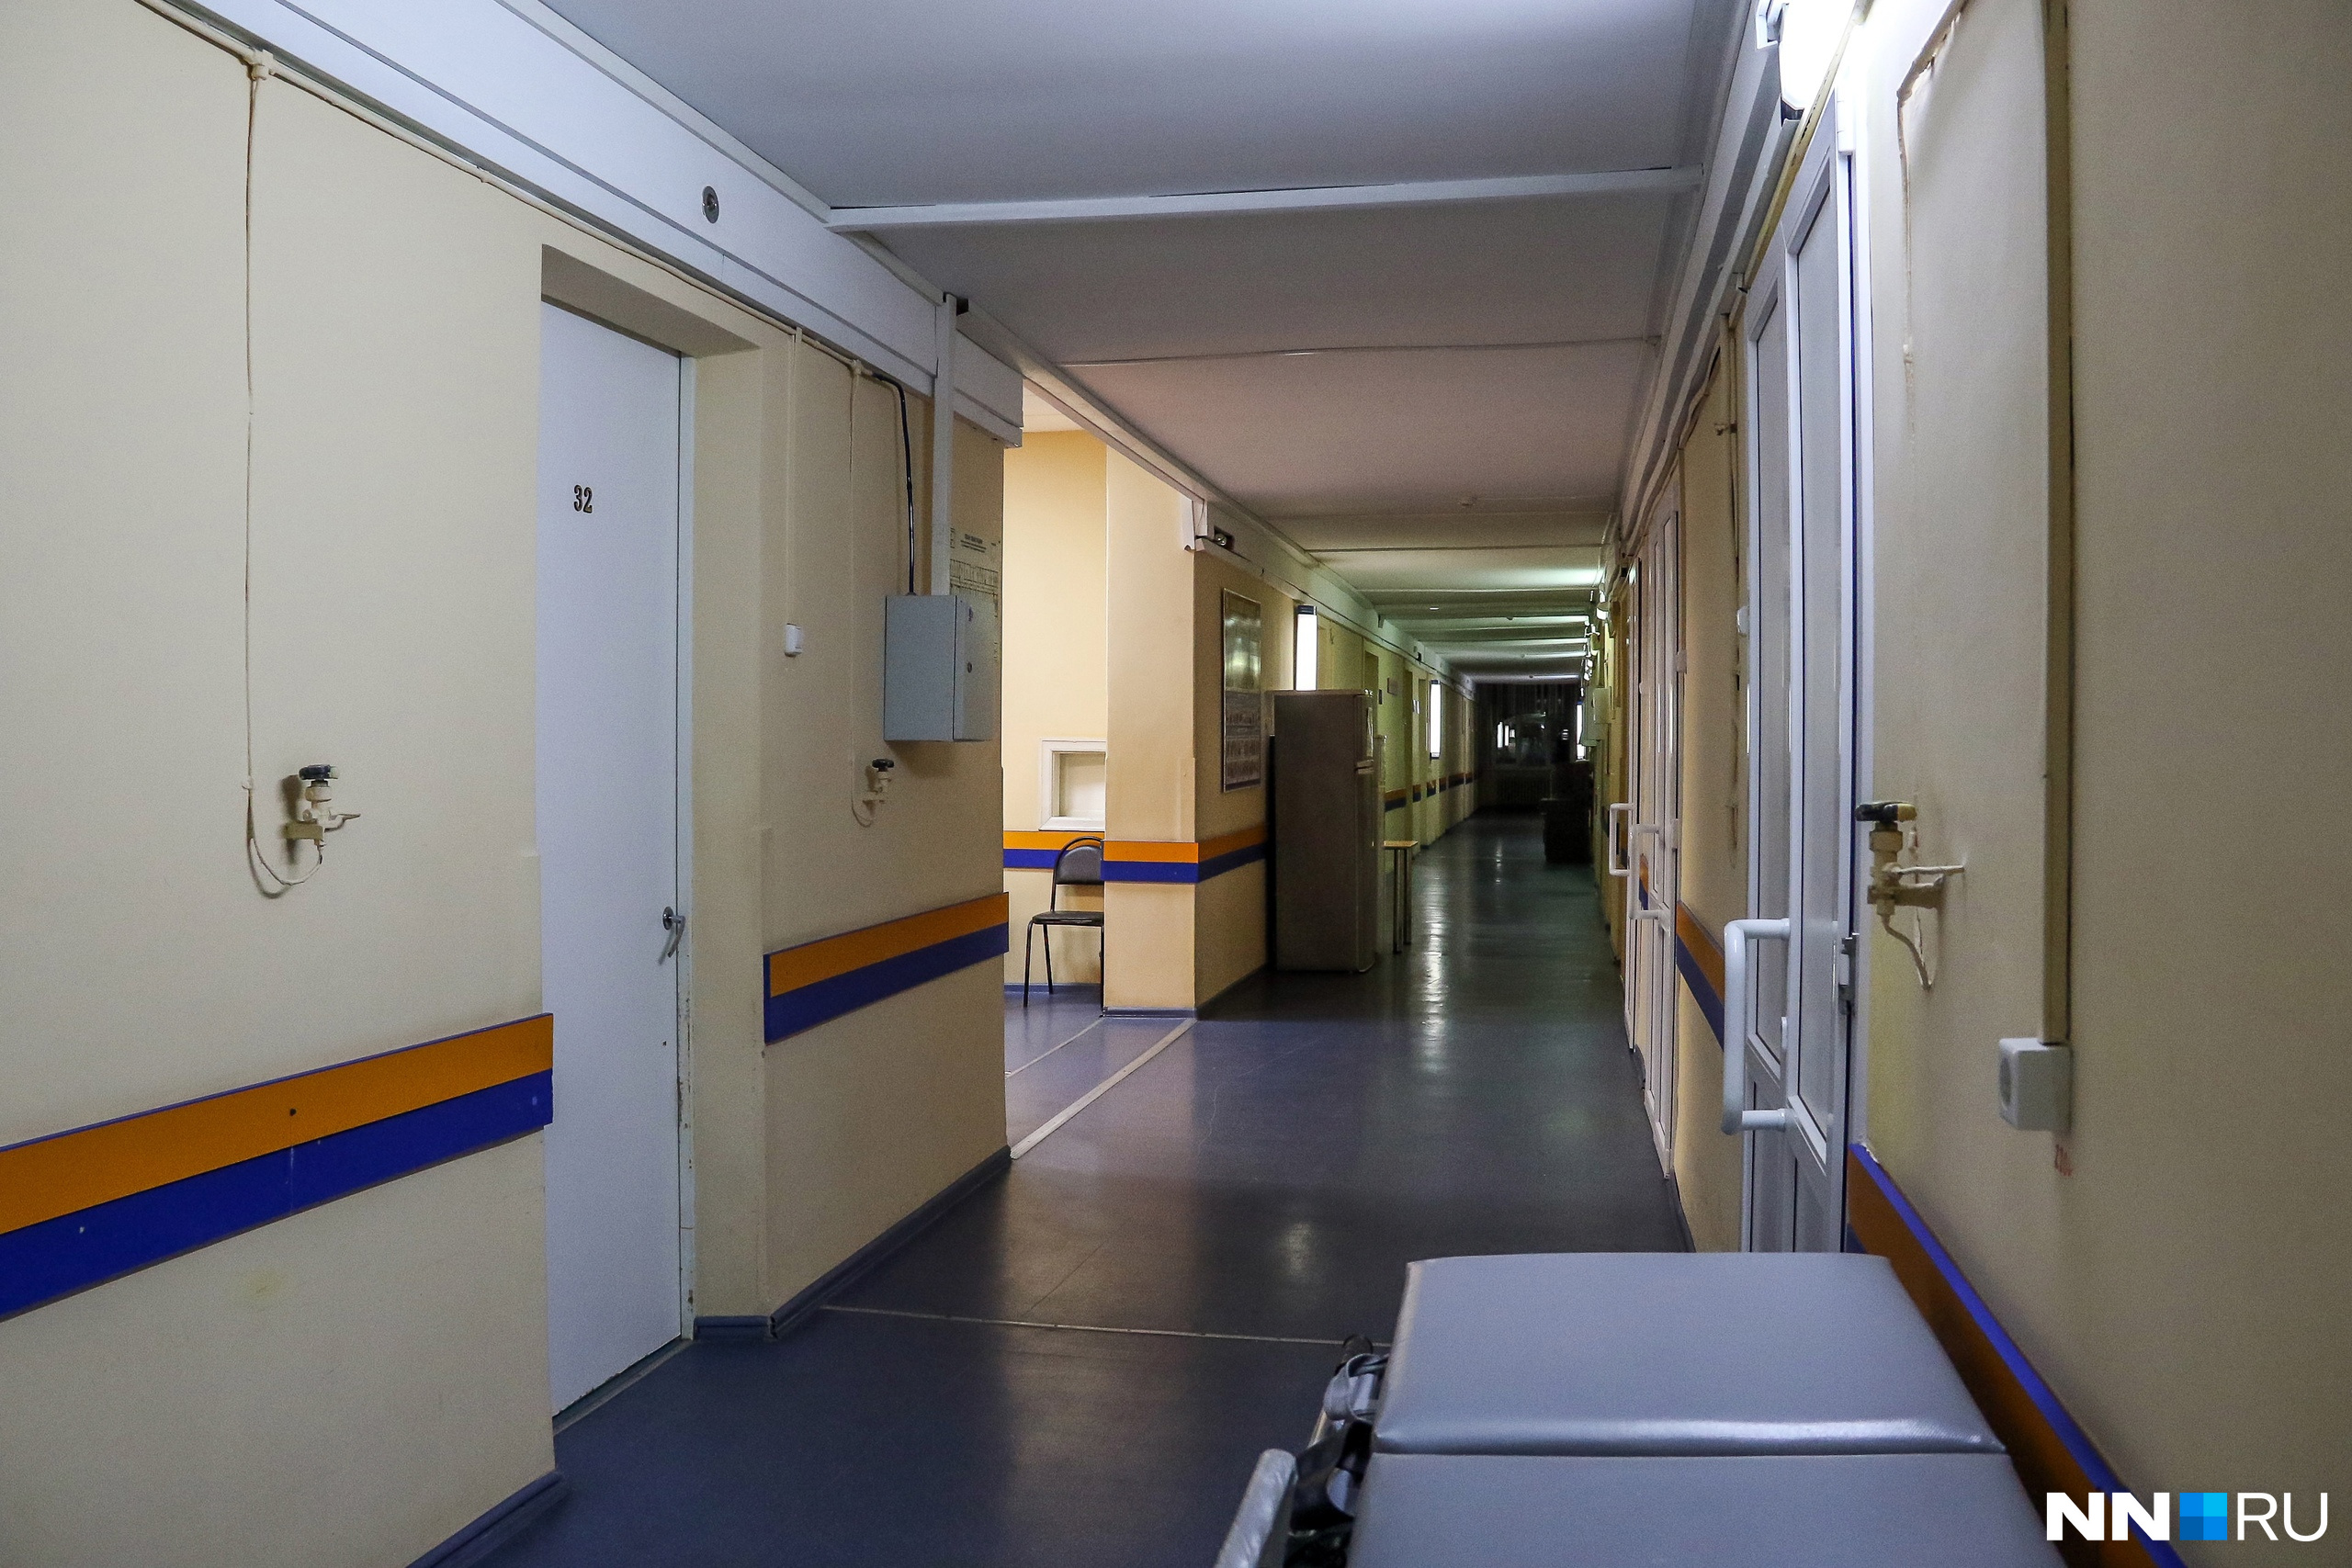 Нехватка персонала наблюдается не только в российских поликлиниках, но и в красных зонах